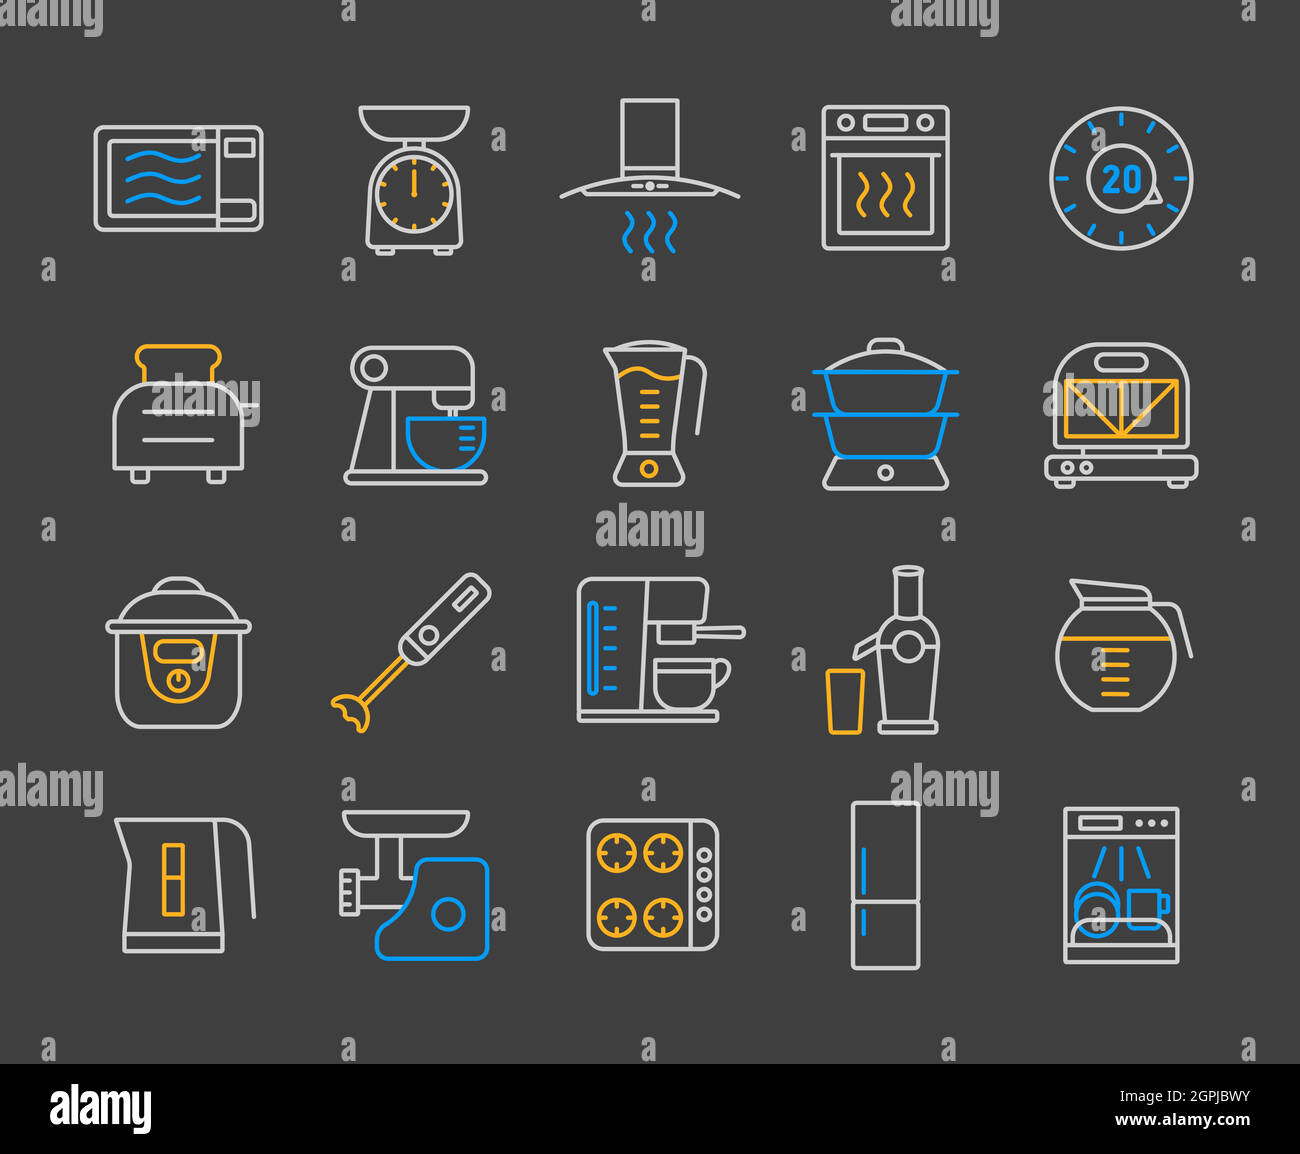 Appareils de cuisine équipement électronique ensemble d'icônes Illustration de Vecteur